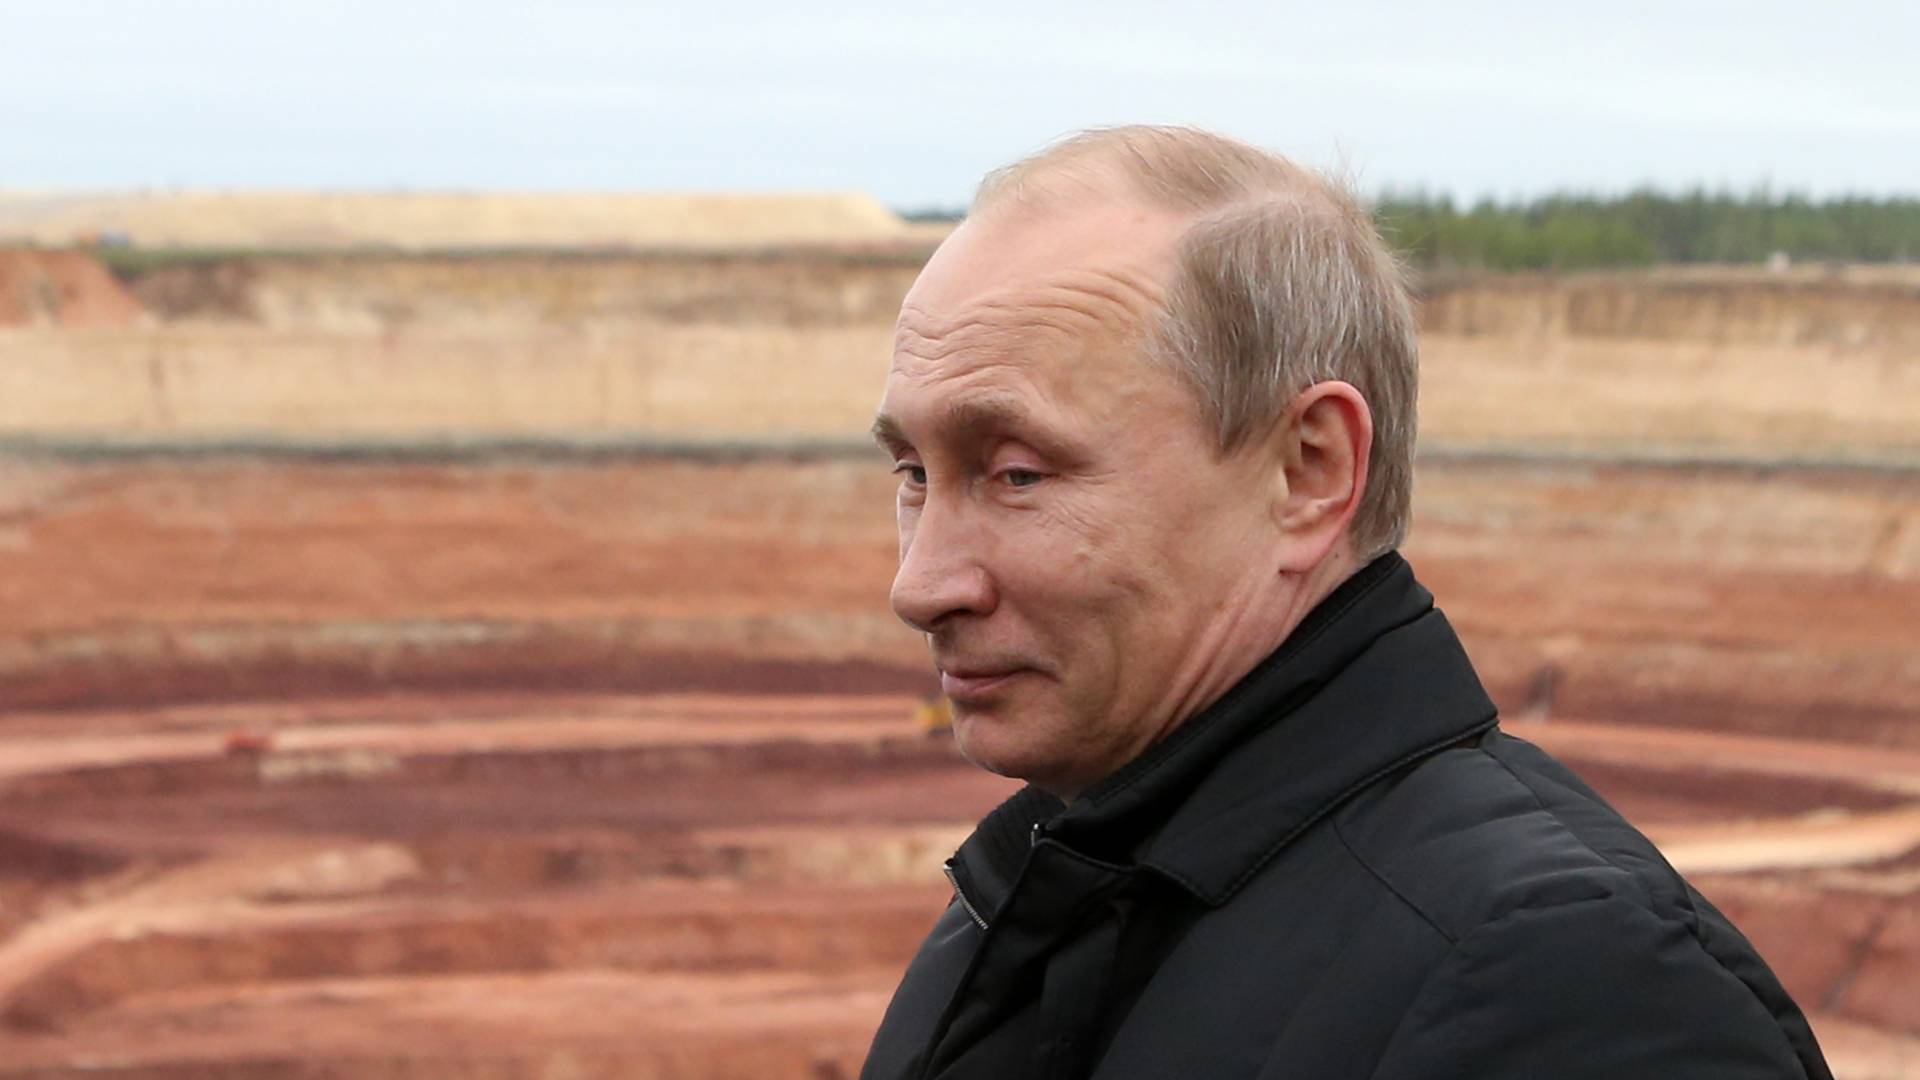 Rosjanie zarabiają miliardy na "krwawych diamentach". Znaleźli lukę w sankcjach